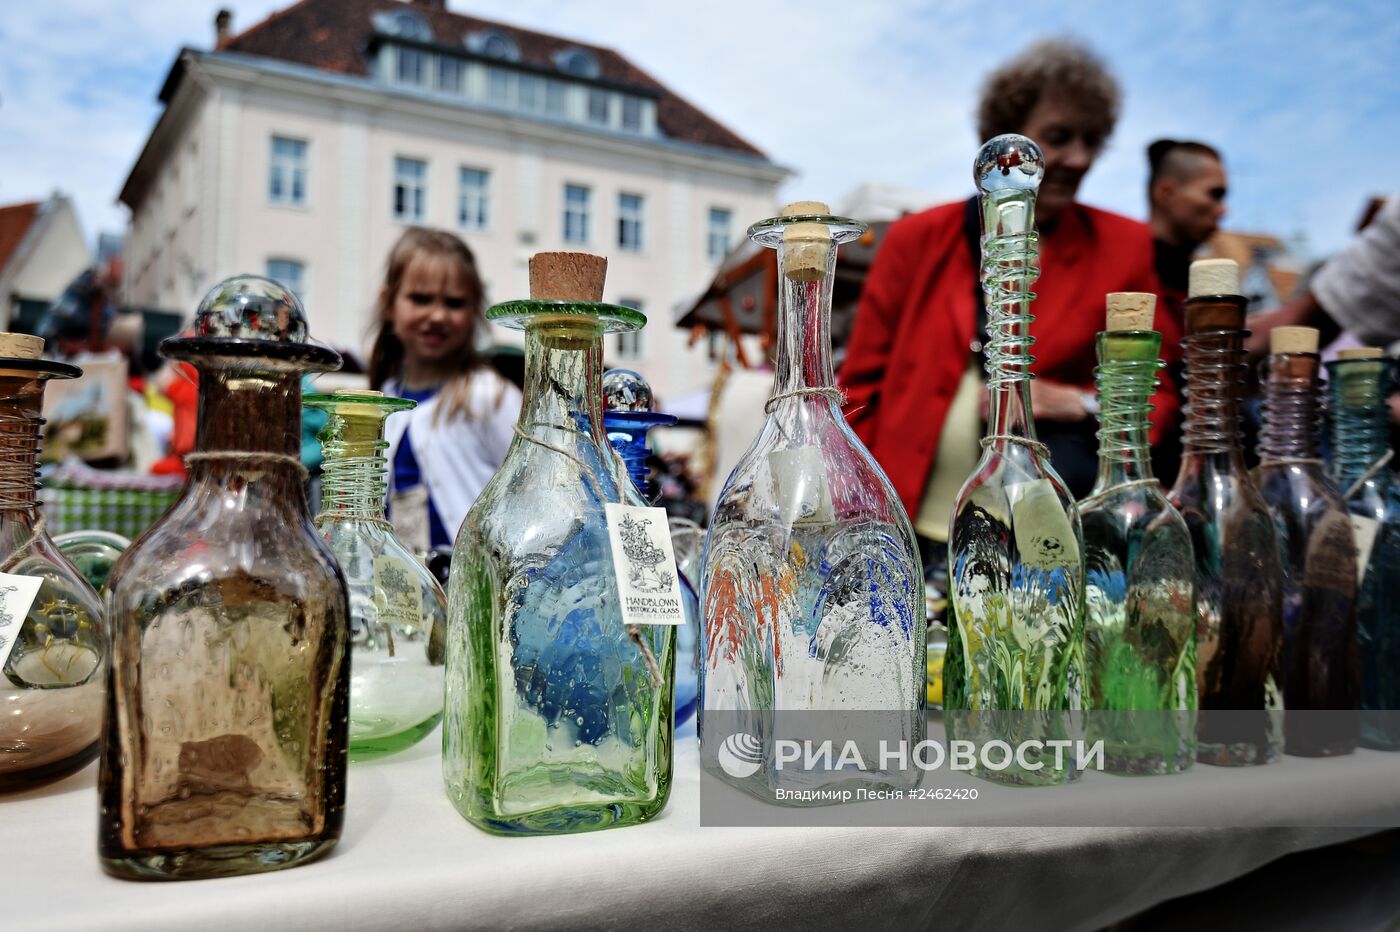 Фестиваль "Дни средневековья" в Таллине